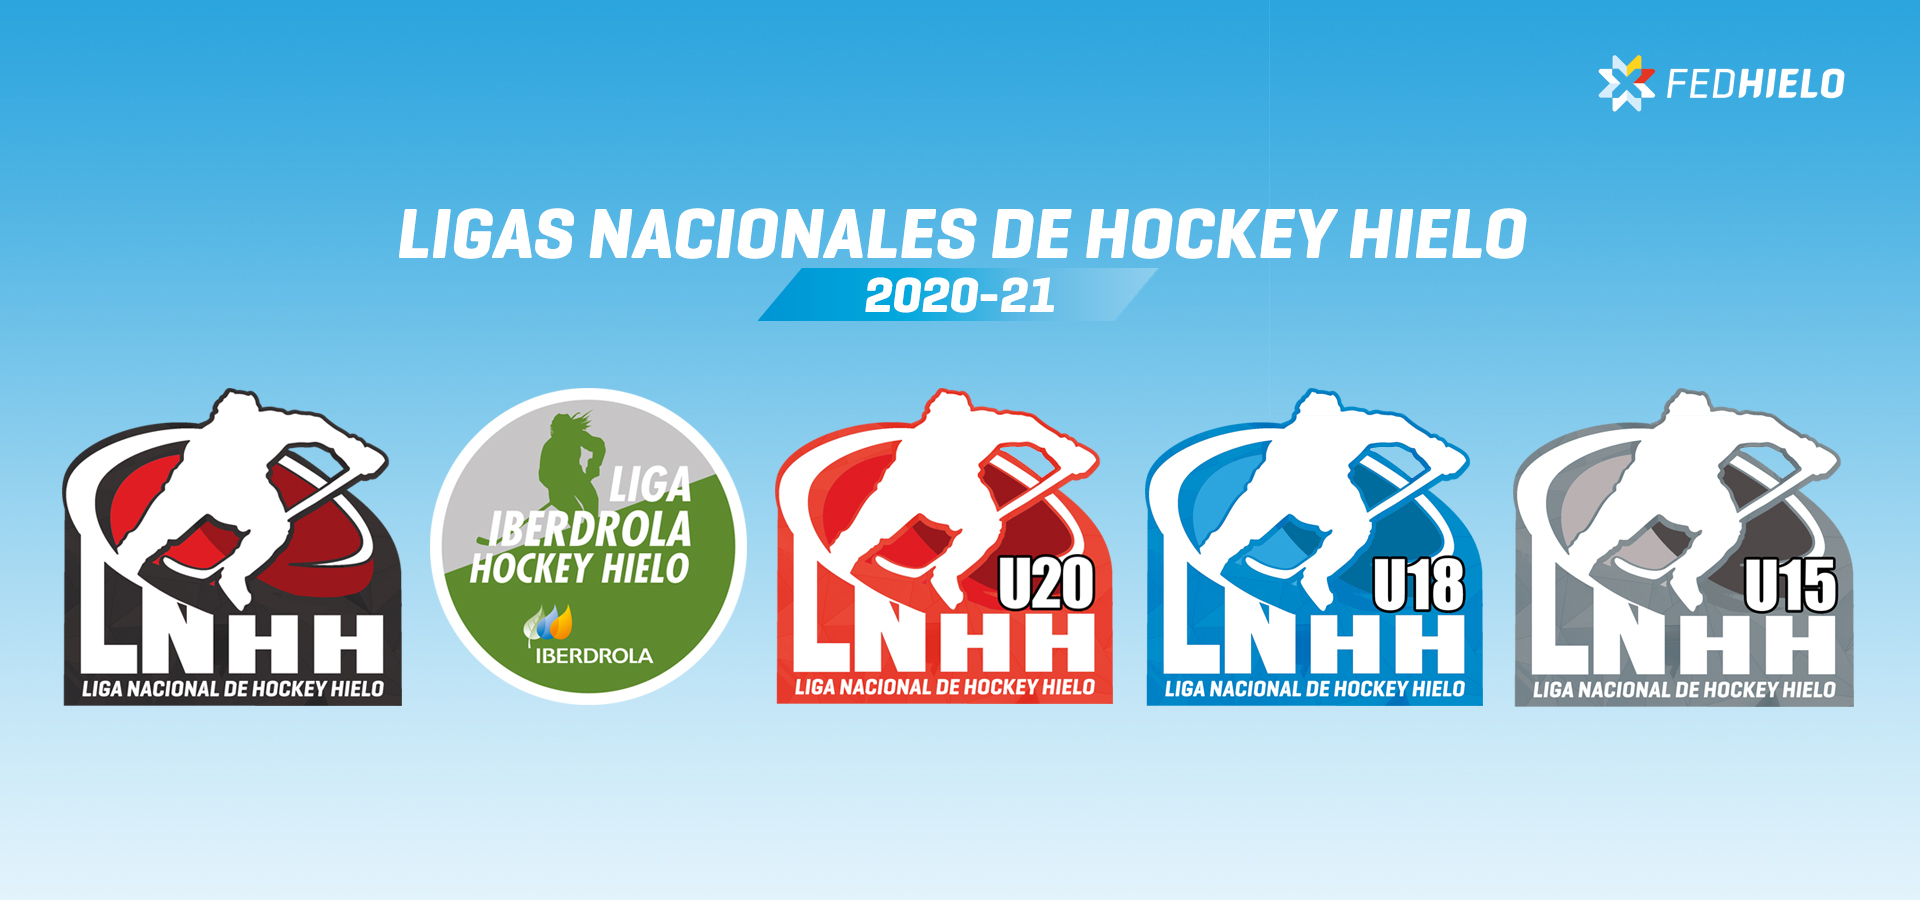 FEDHIELO. Real Federación Española Deportes de Hielo | Ligas Nacionales Hockey Hielo 2020-21